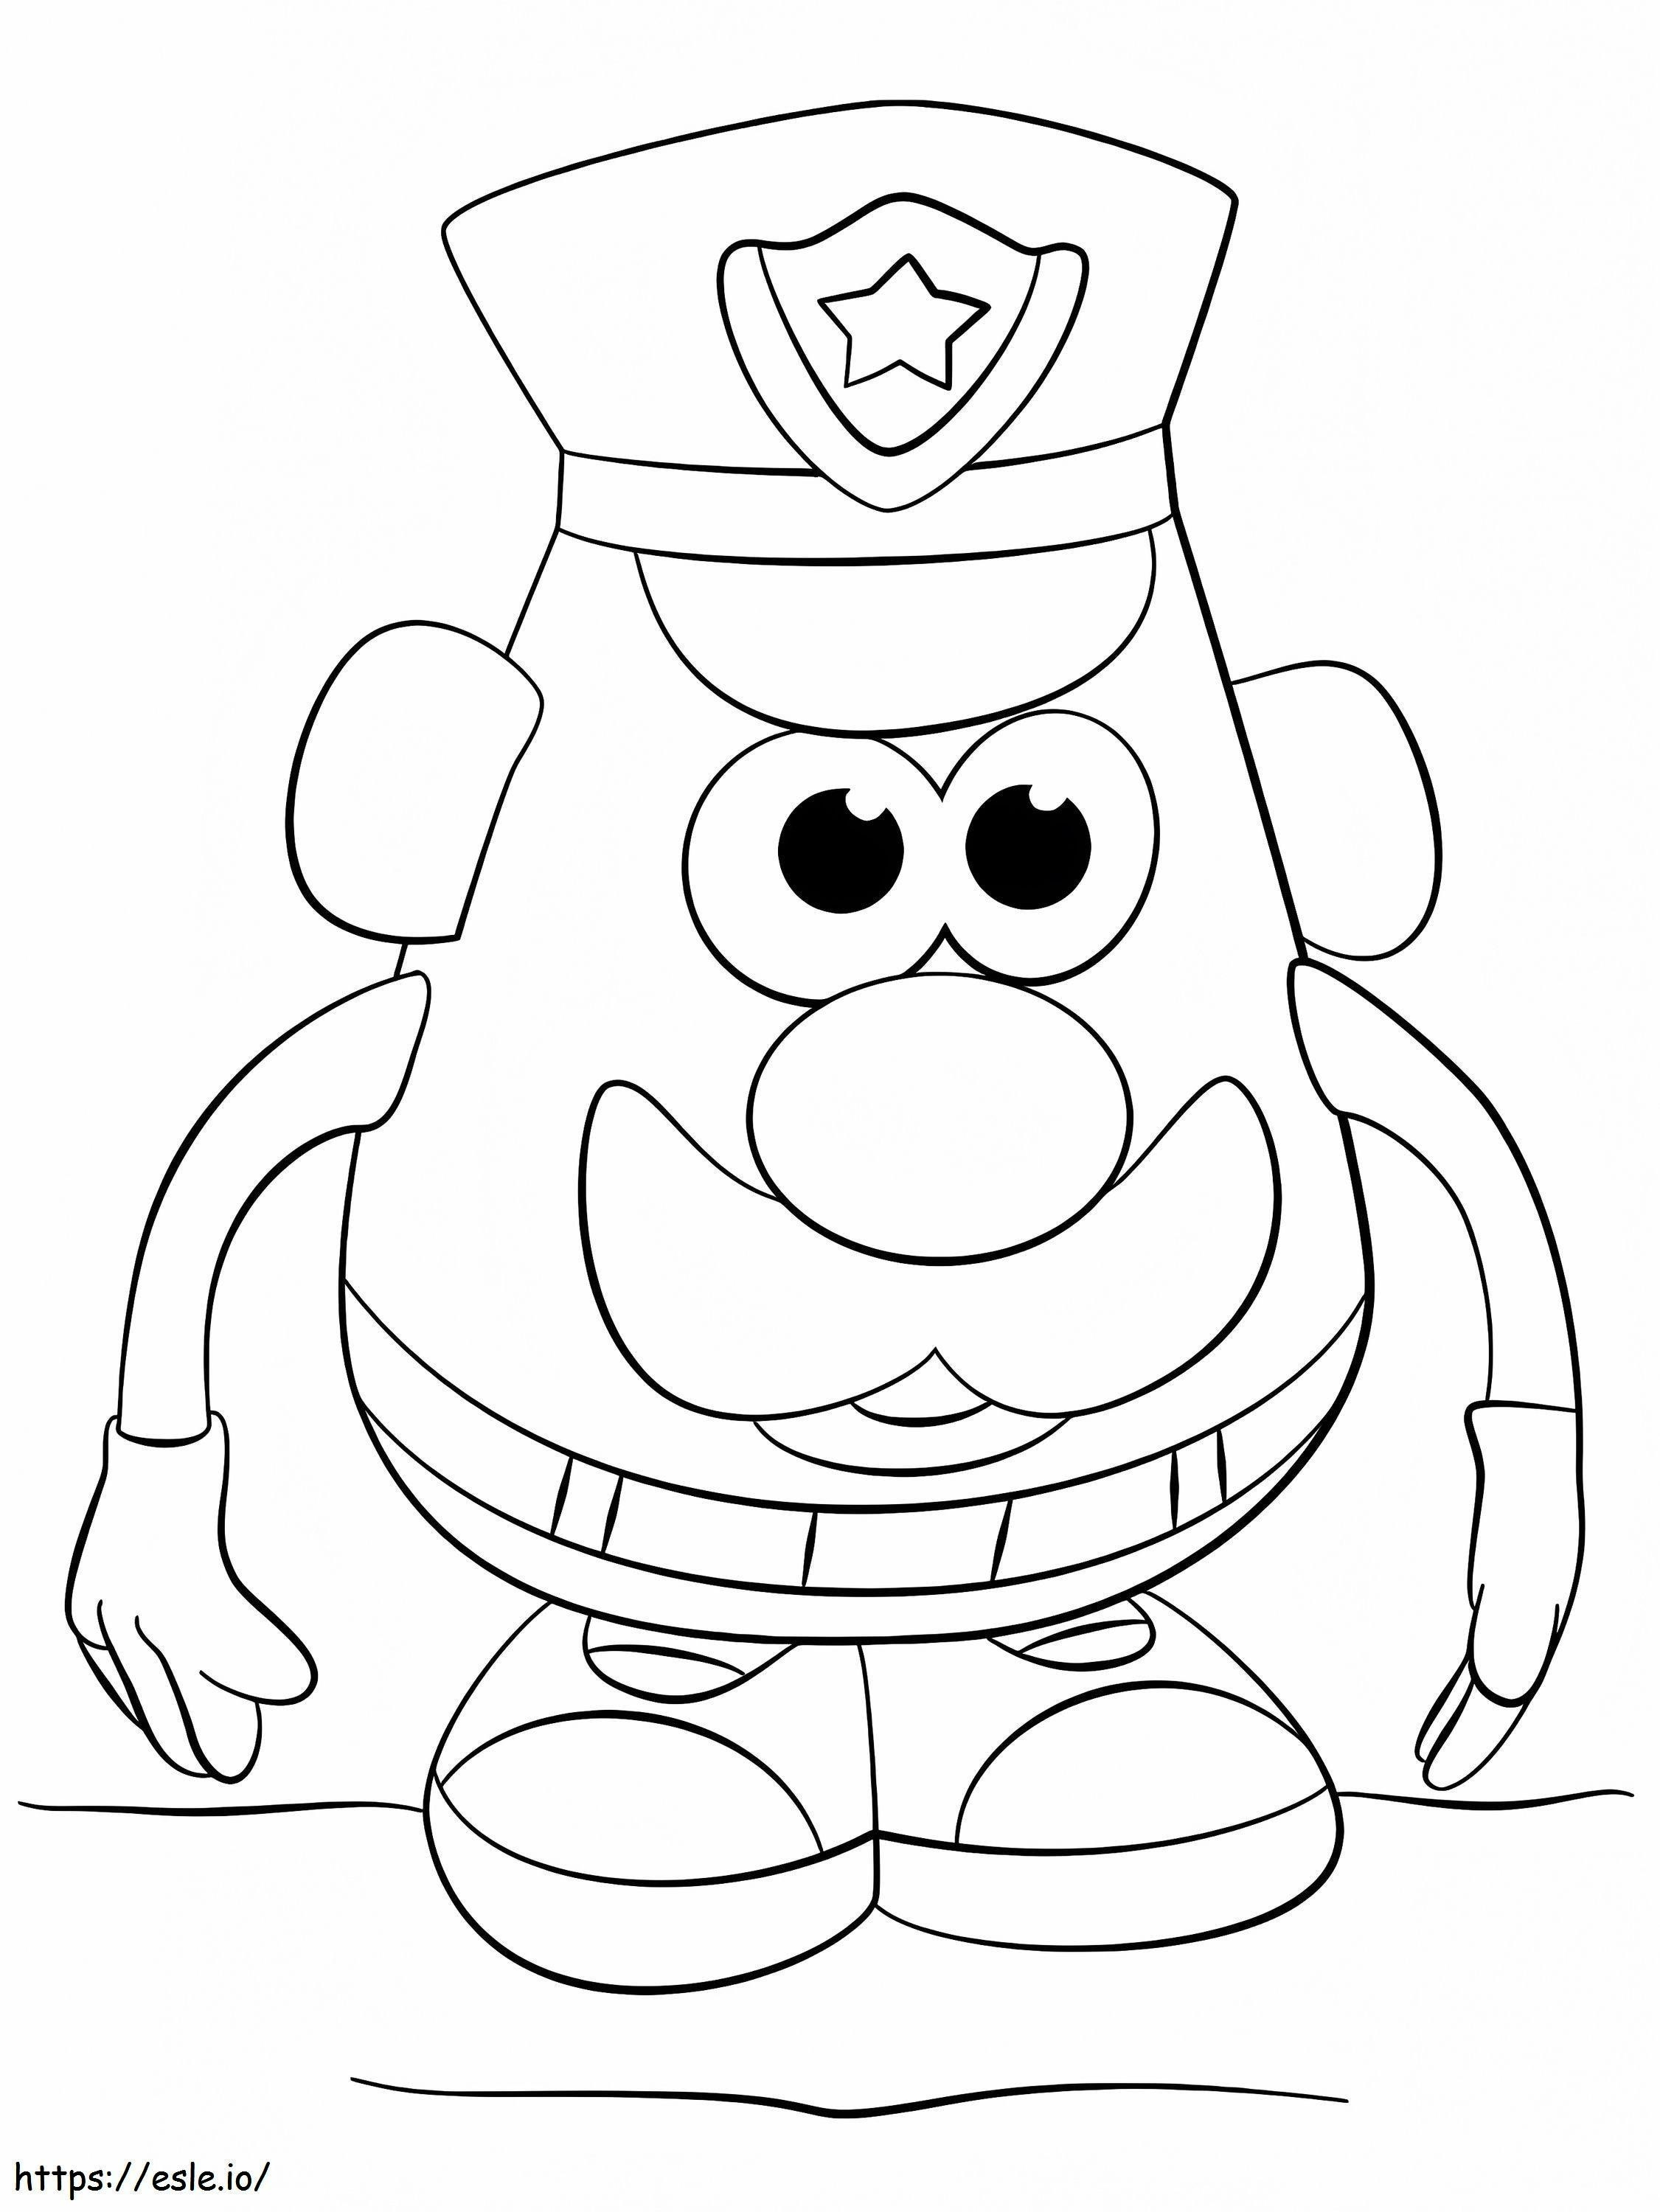 Mr. Potato Head Police coloring page